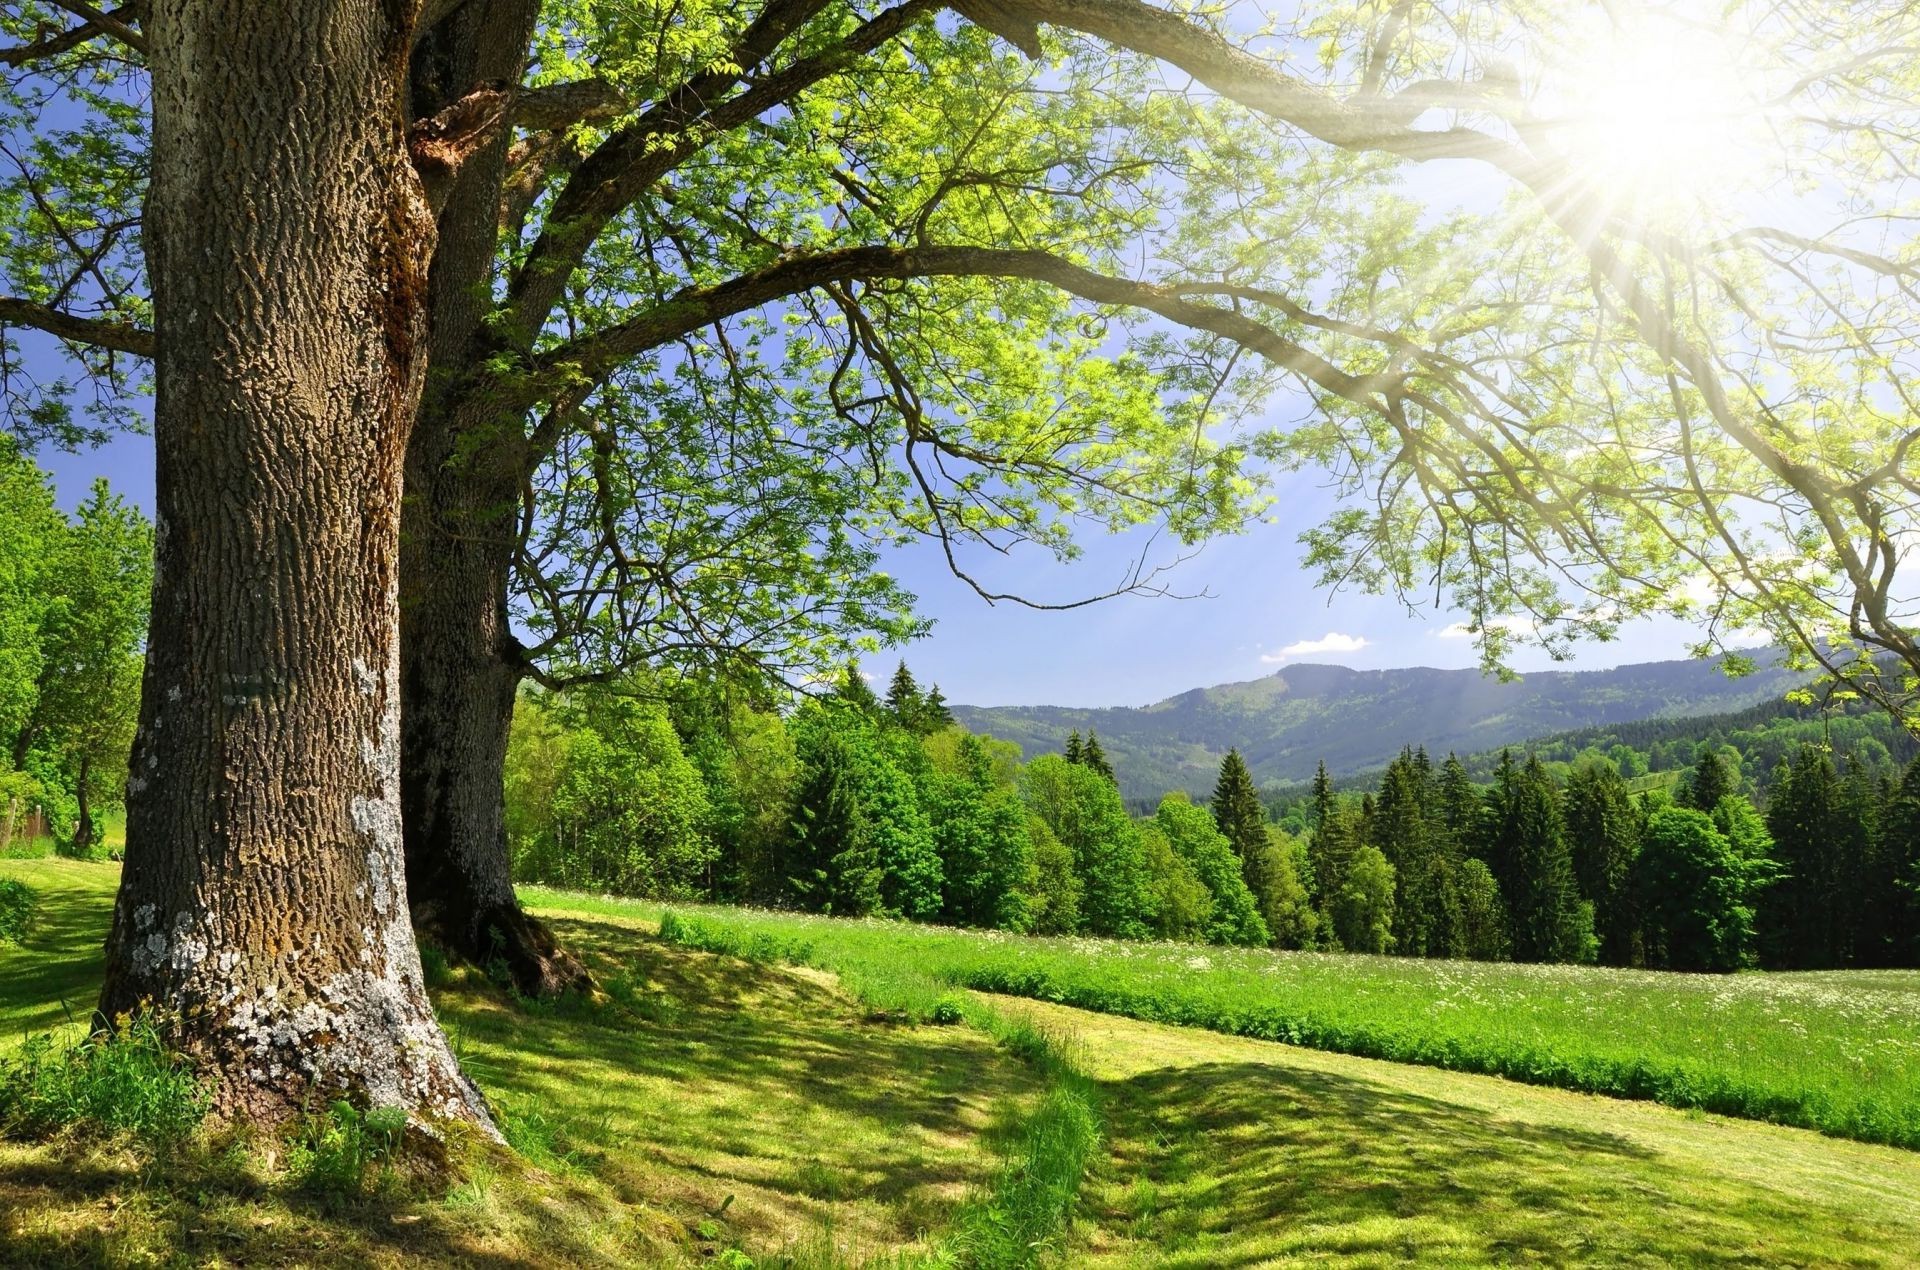 солнечный свет и лучи дерево пейзаж природа древесины лист парк сезон хорошую погоду на открытом воздухе трава живописный лето среды сельских пейзажи осень сцена яркий солнце